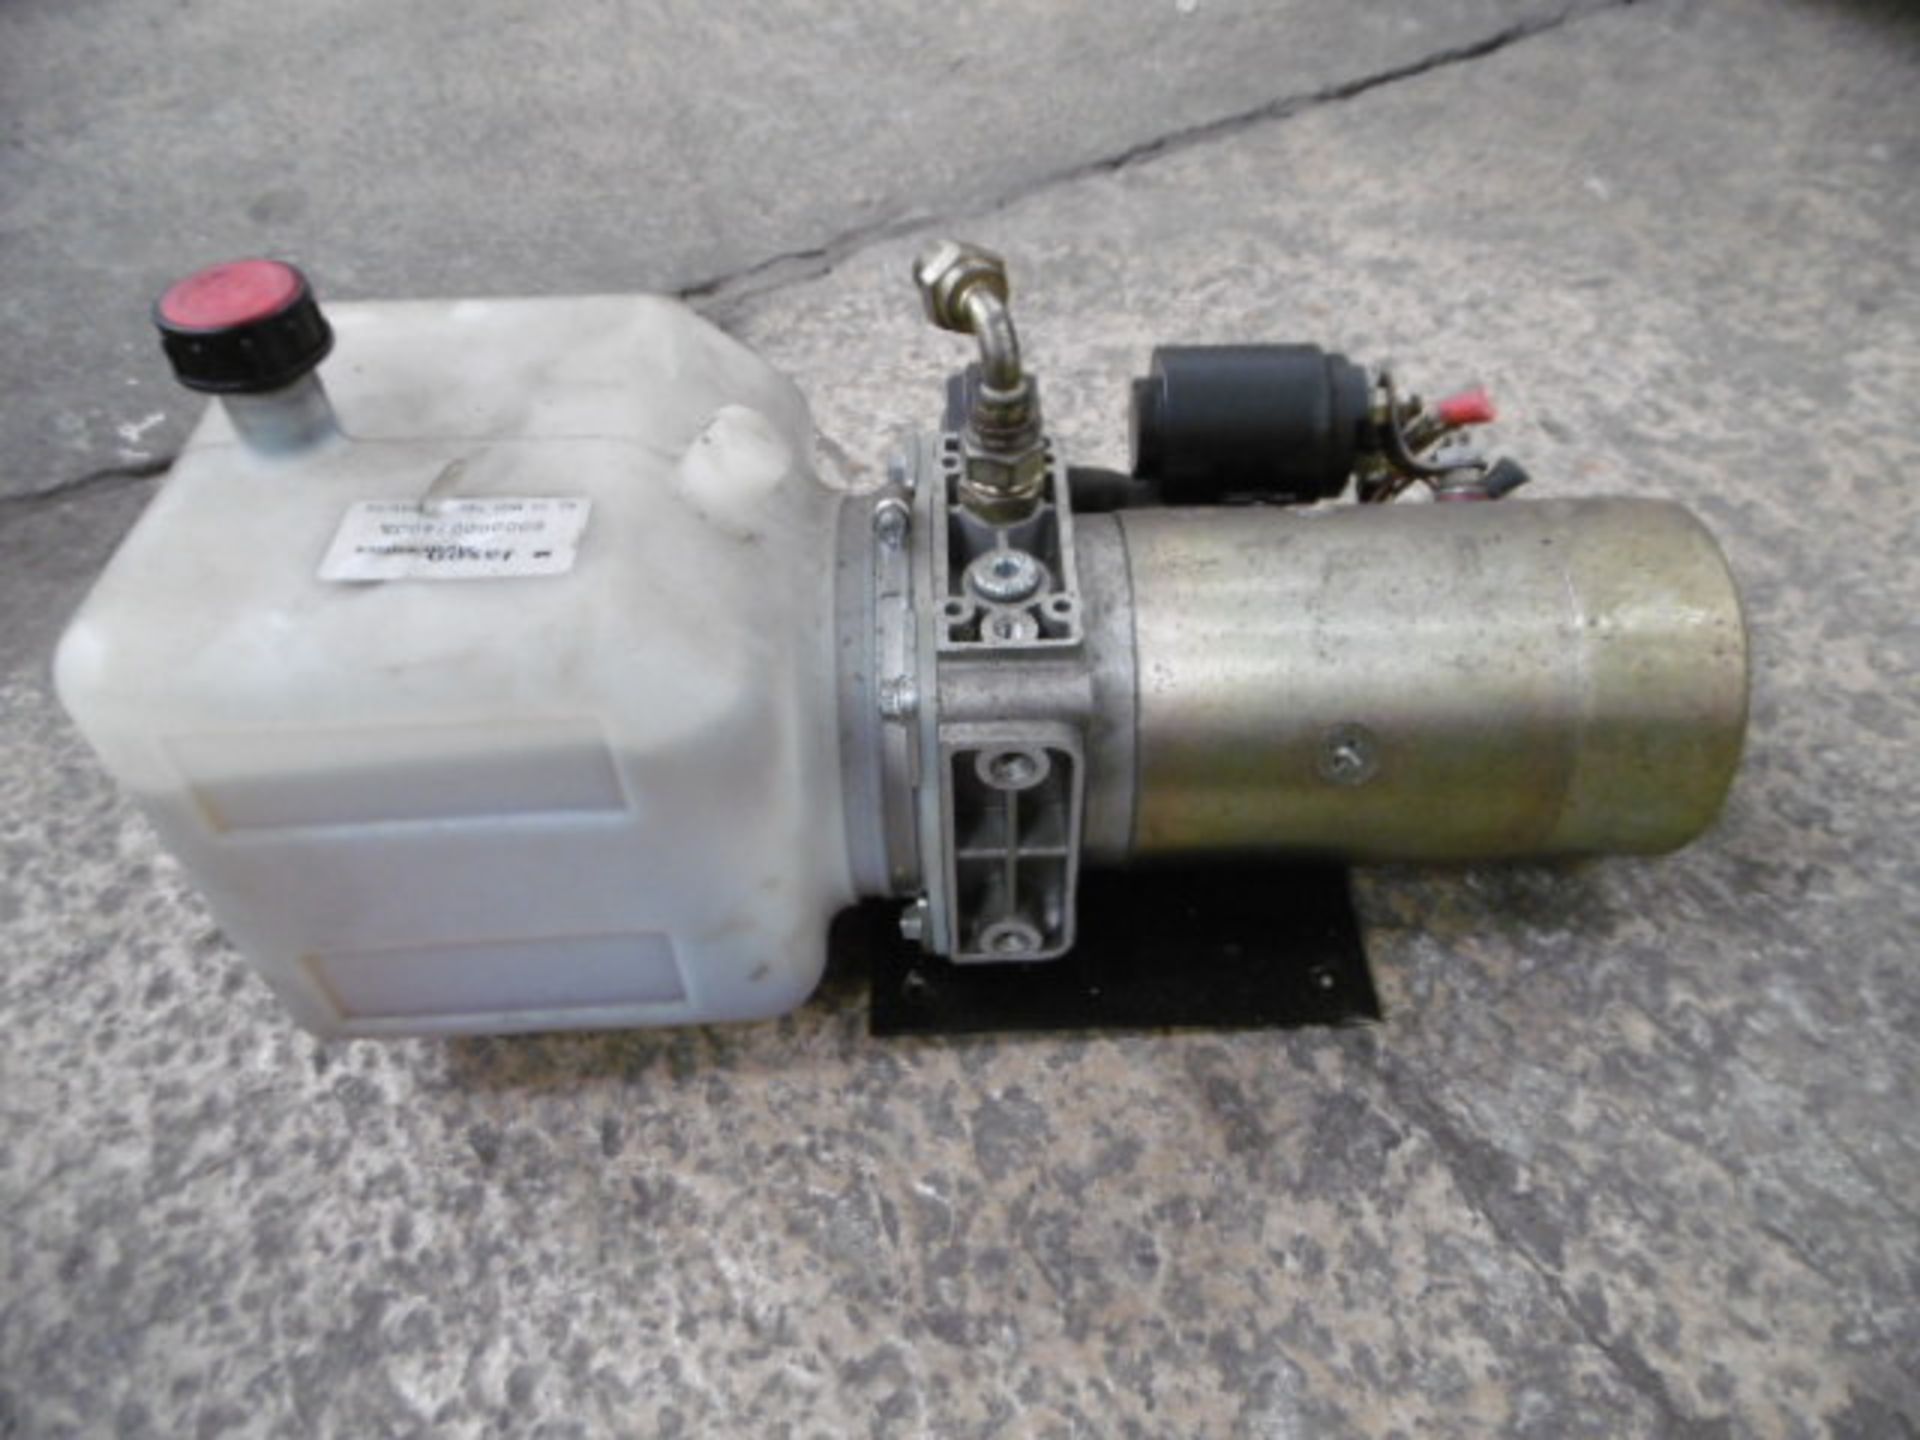 12V 1.8Kw Hydraulic Pump - Image 2 of 5